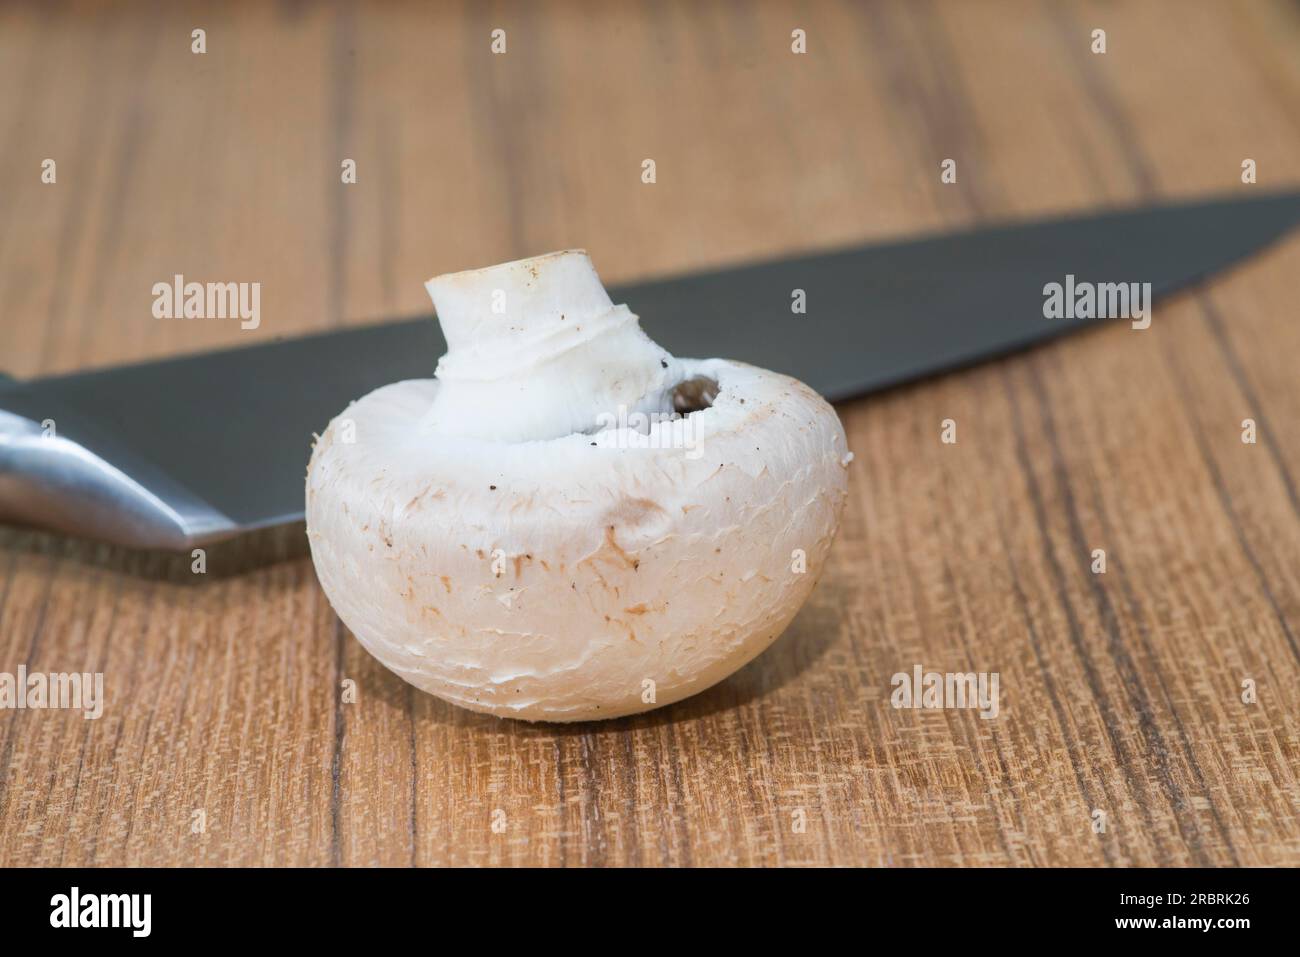 Einzelner ungekochter, ganzer weißer Pilz oder ein gebräuchlicher Pilz (Agaricus bisporus) zur Verwendung in der Küche und vegetarischer Küche Stockfoto